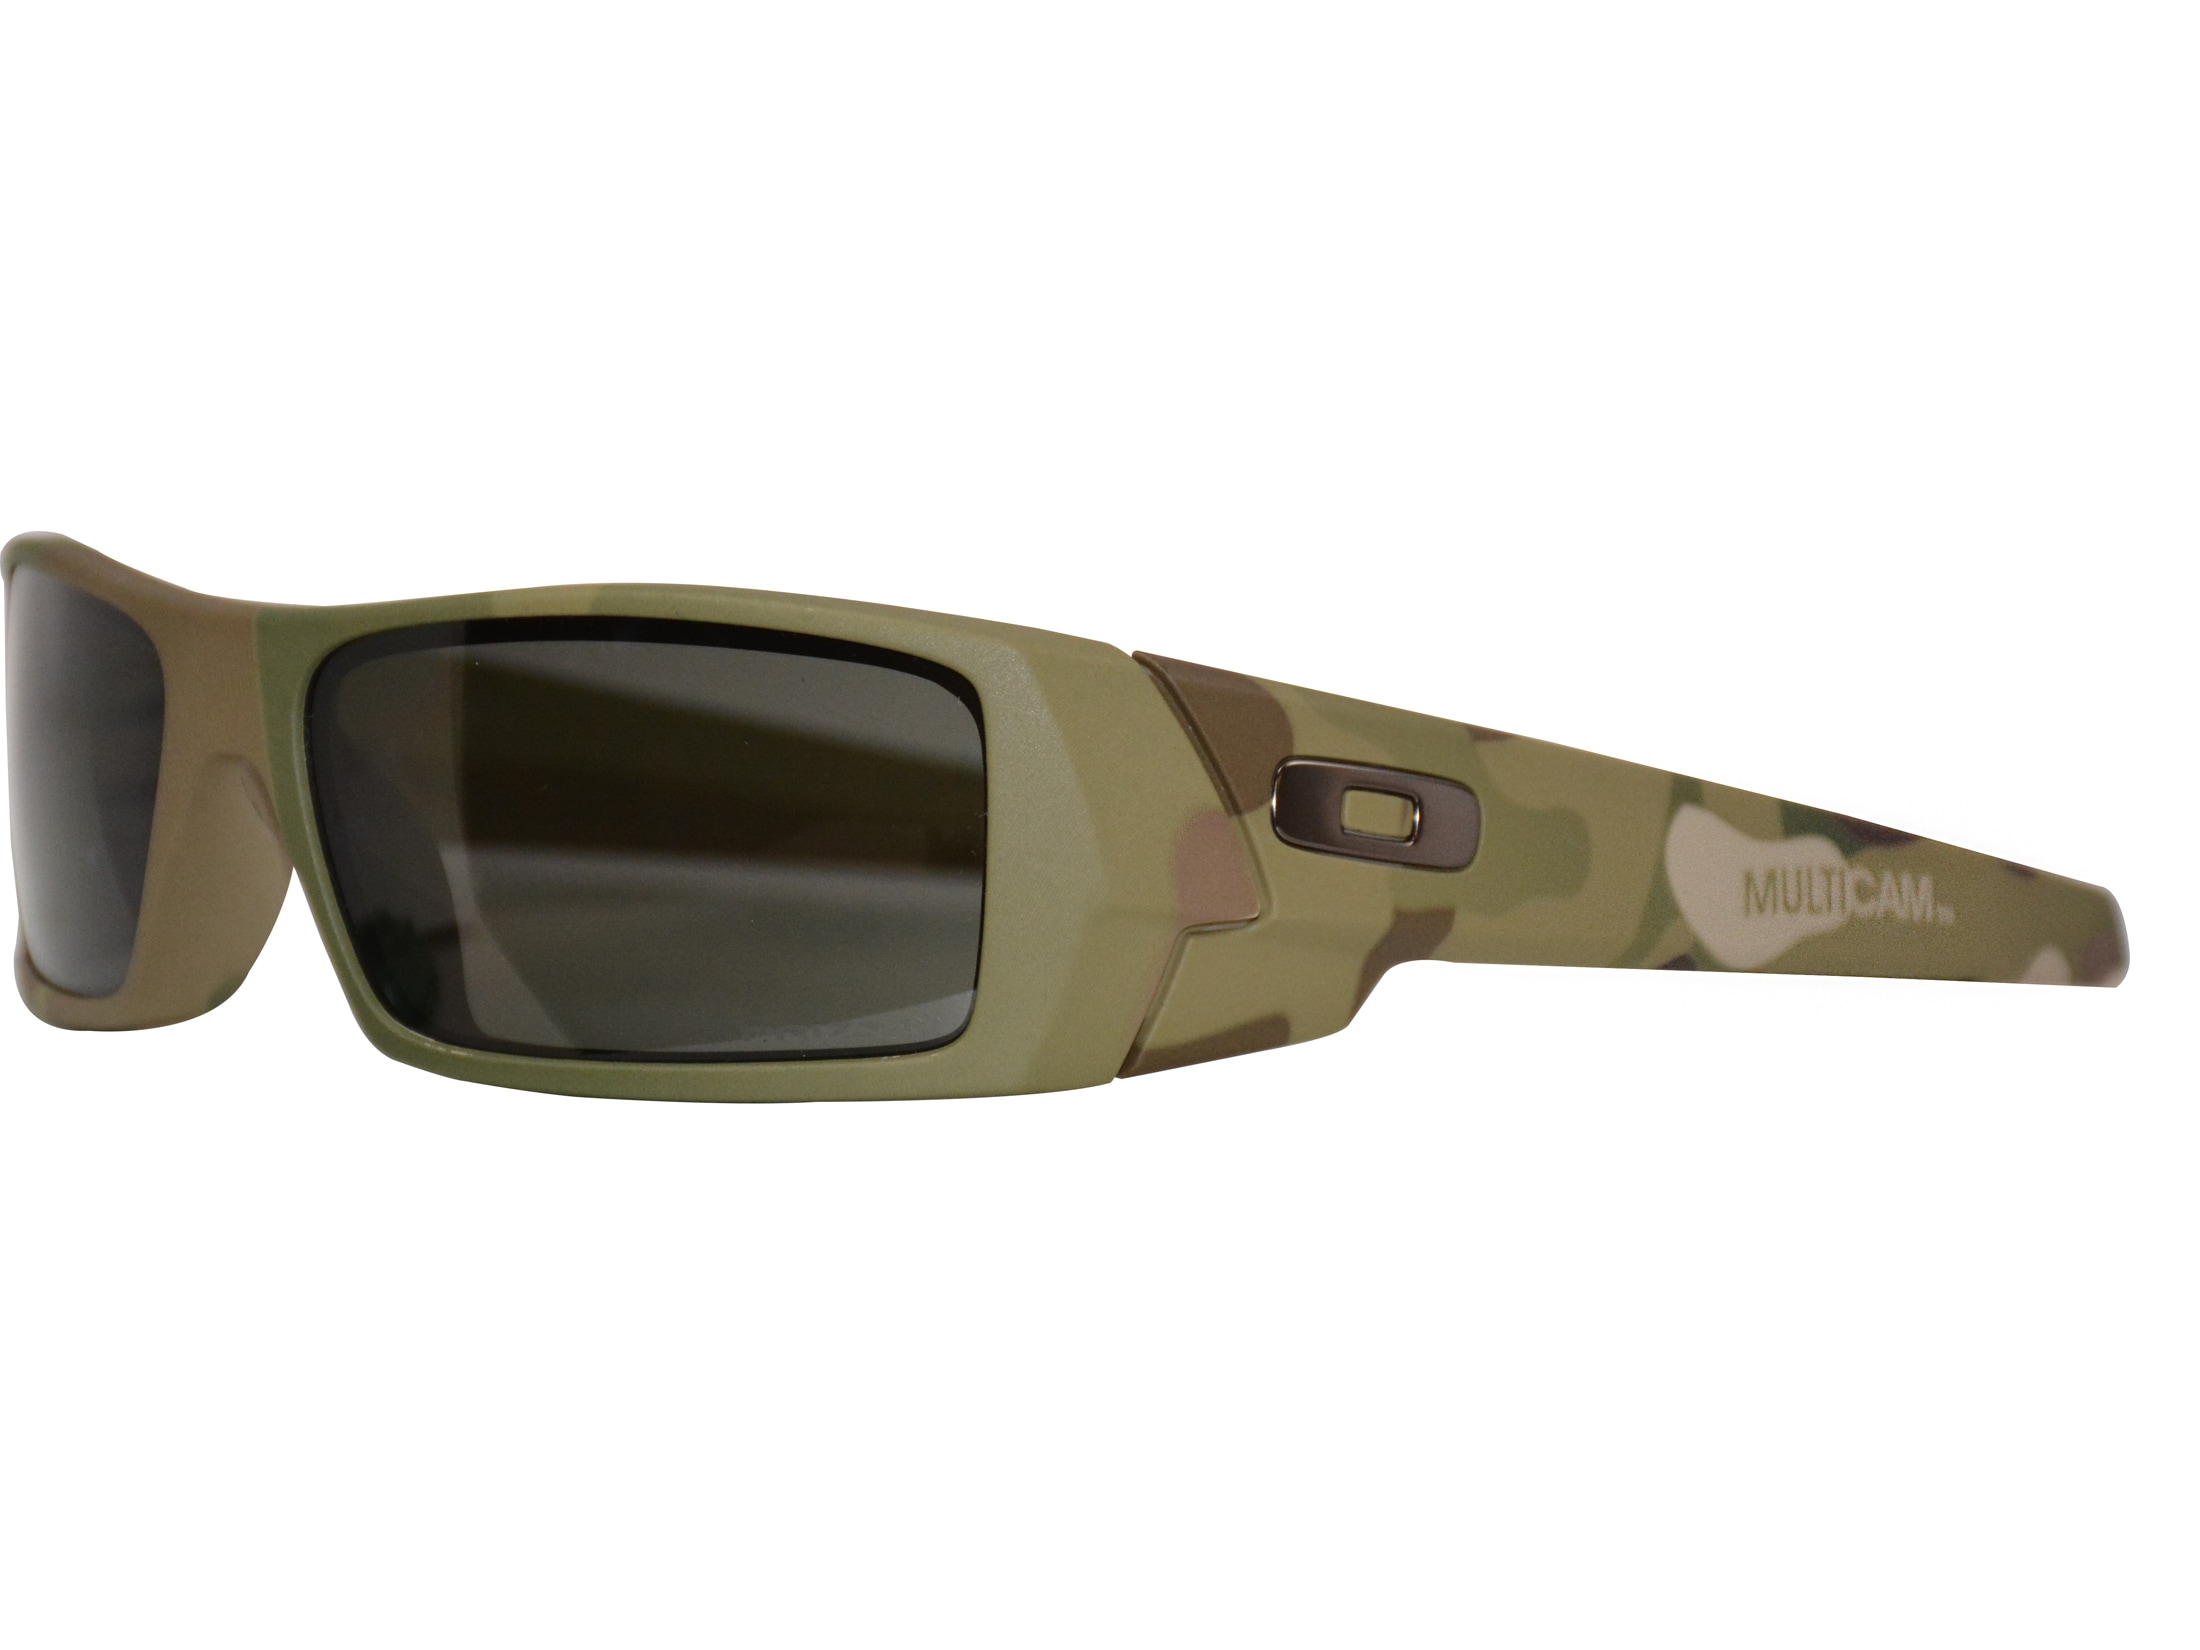 Camo Polarized Sunglasses  Camouflage Fishing Sunglasses 4 Super Tough  Polarized UV Lenses - Style Review